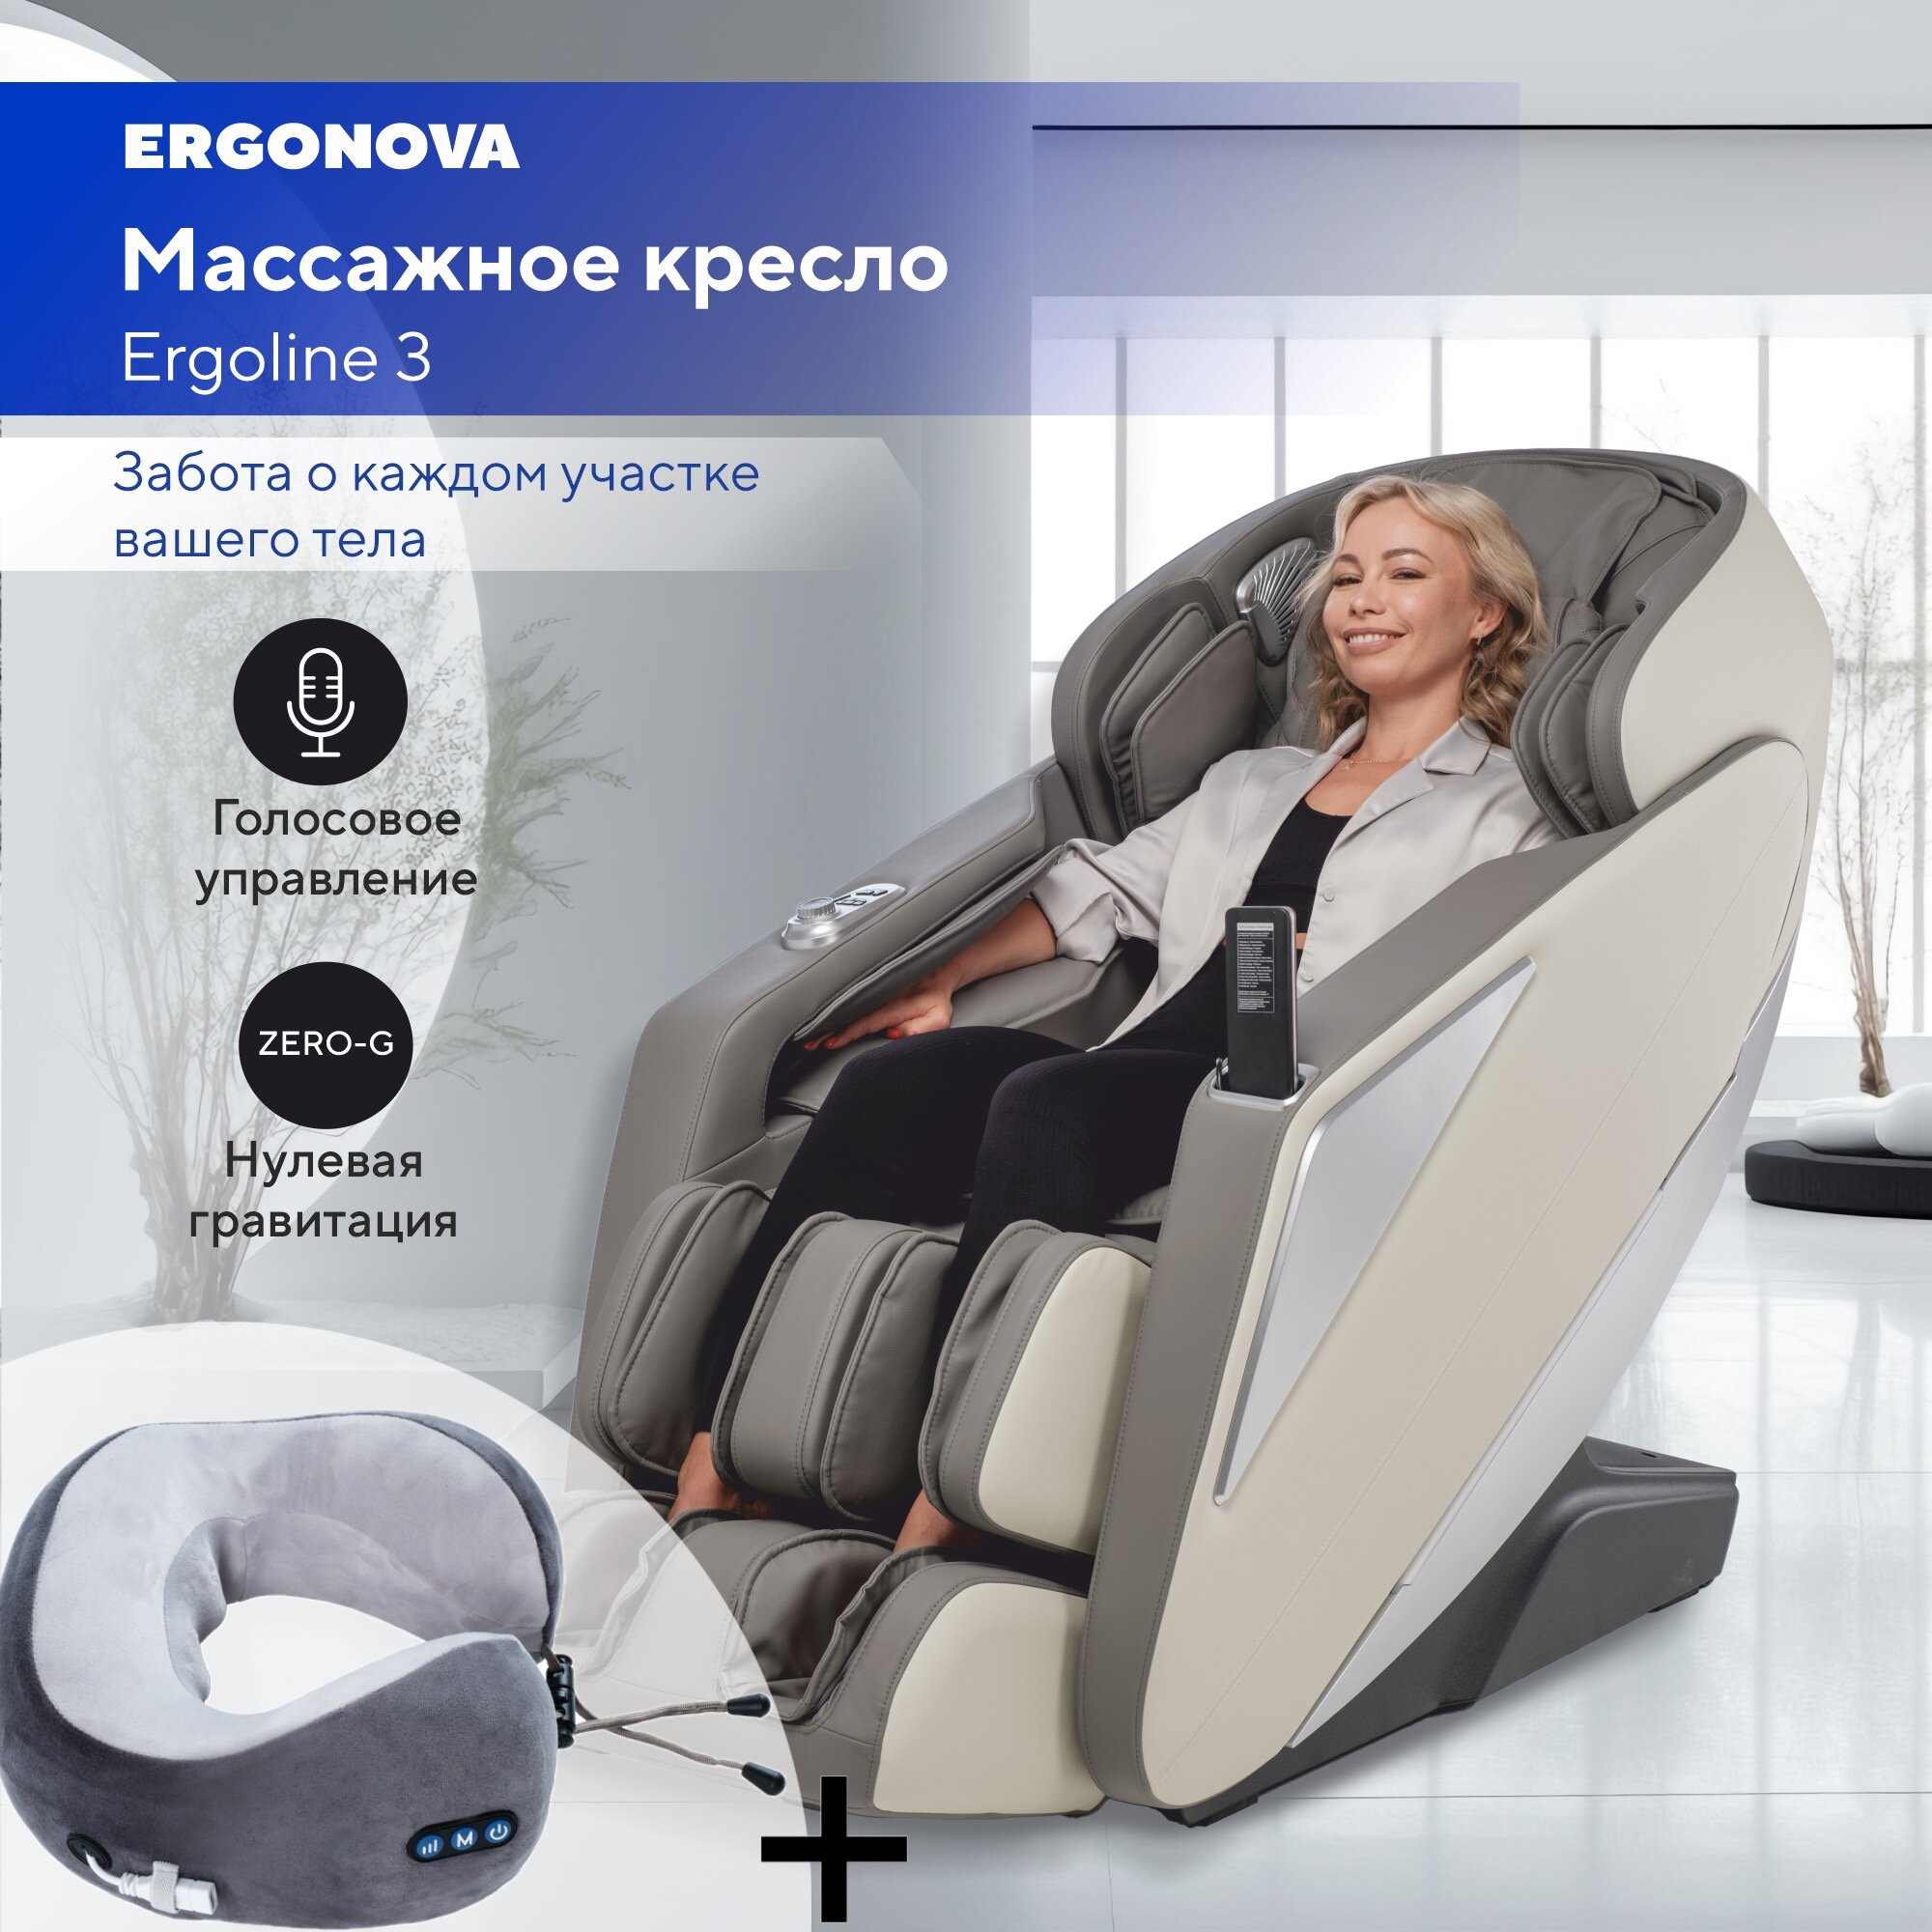 Массажное кресло Ergonova Ergoline 3 Grey